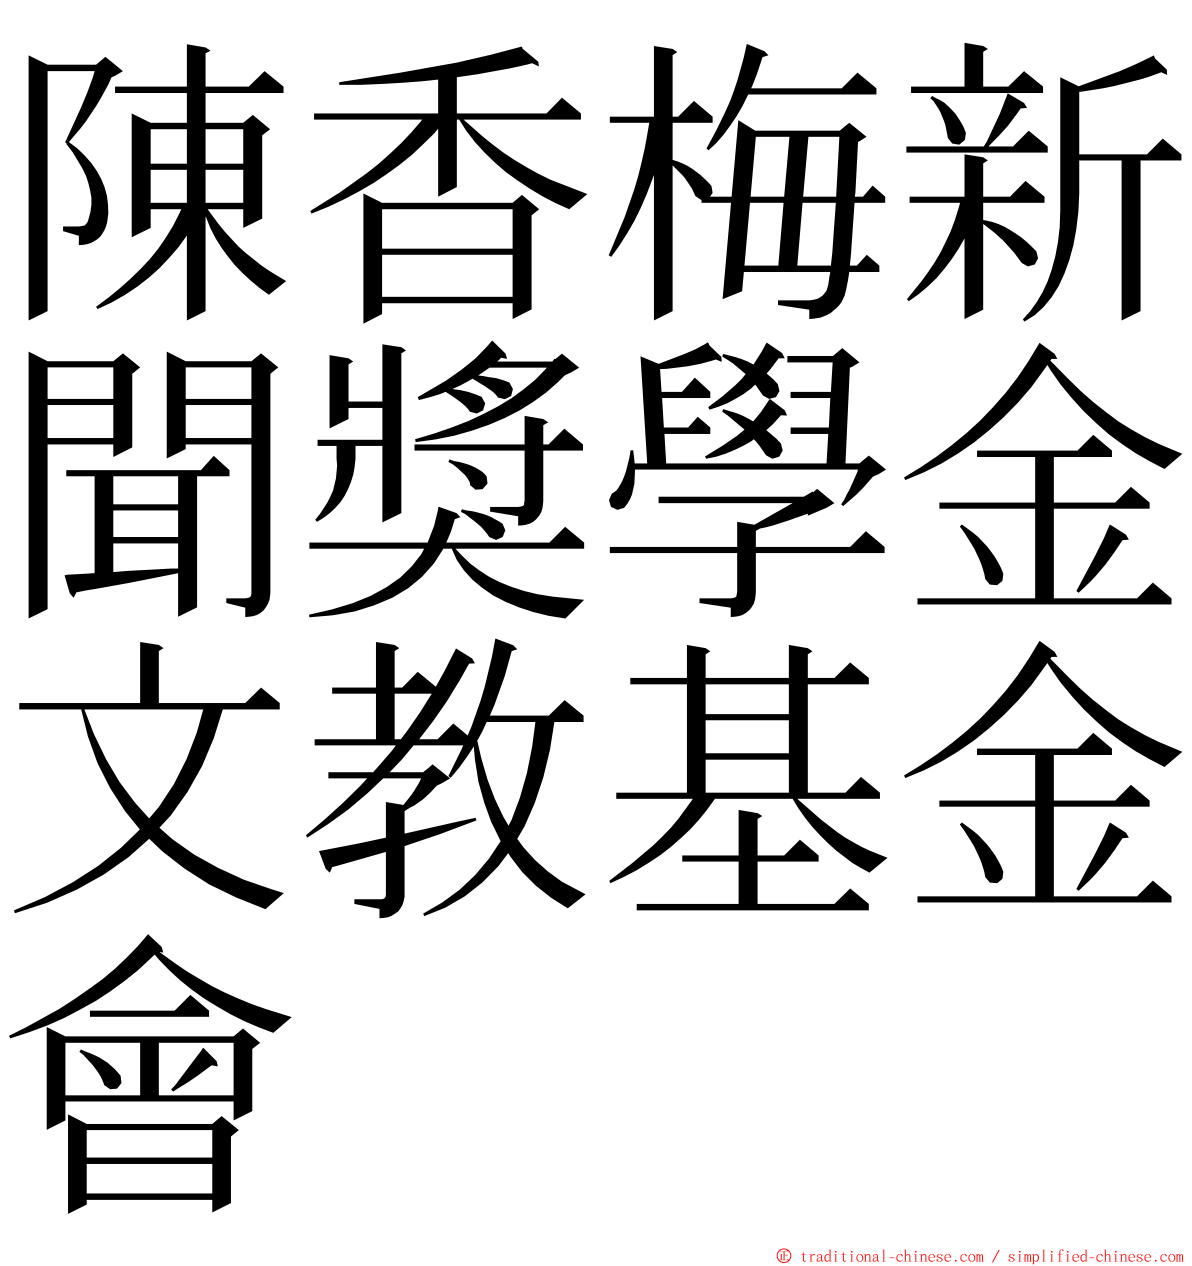 陳香梅新聞獎學金文教基金會 ming font